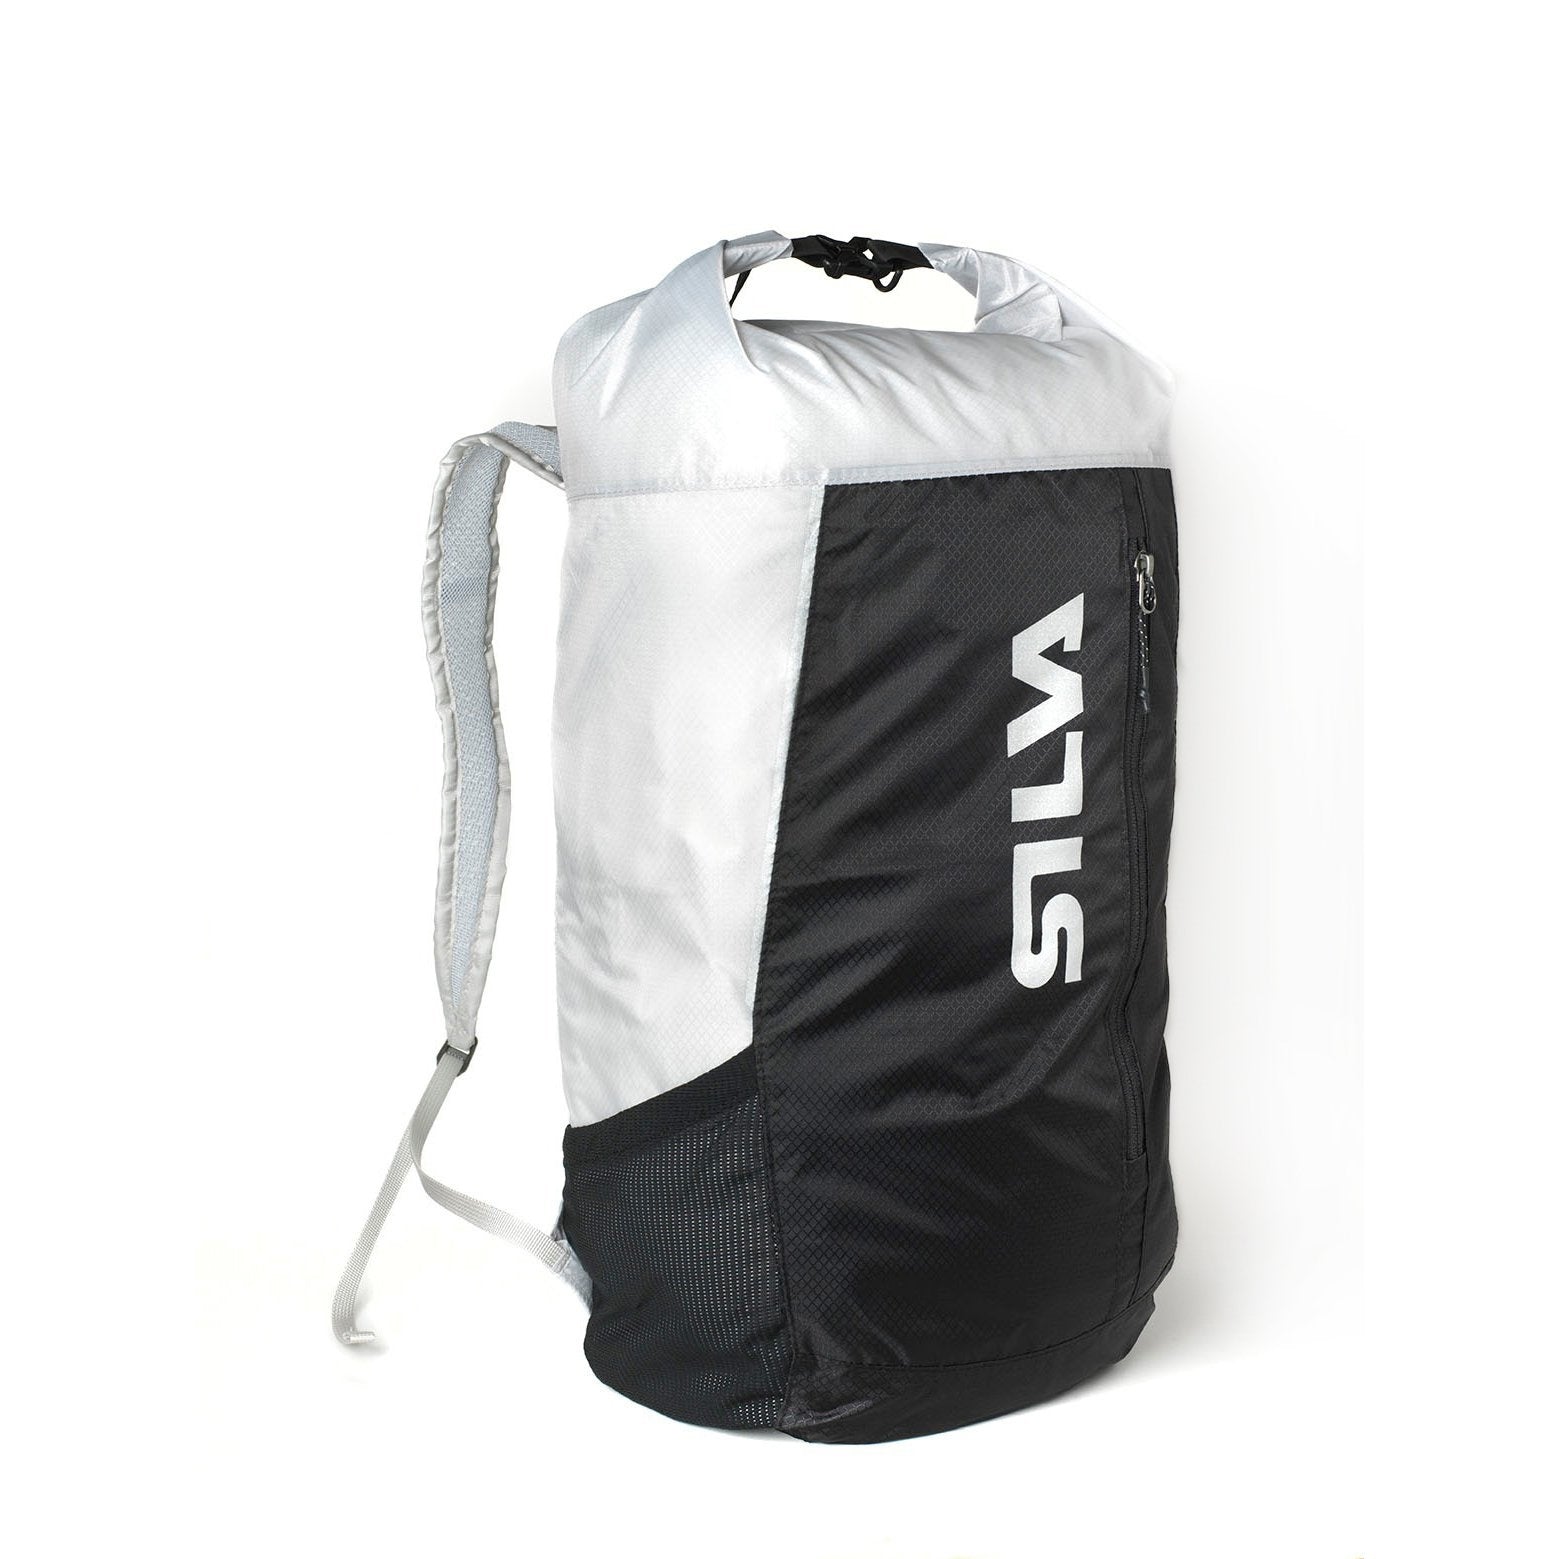 Silva - 23L Waterproof Backpack